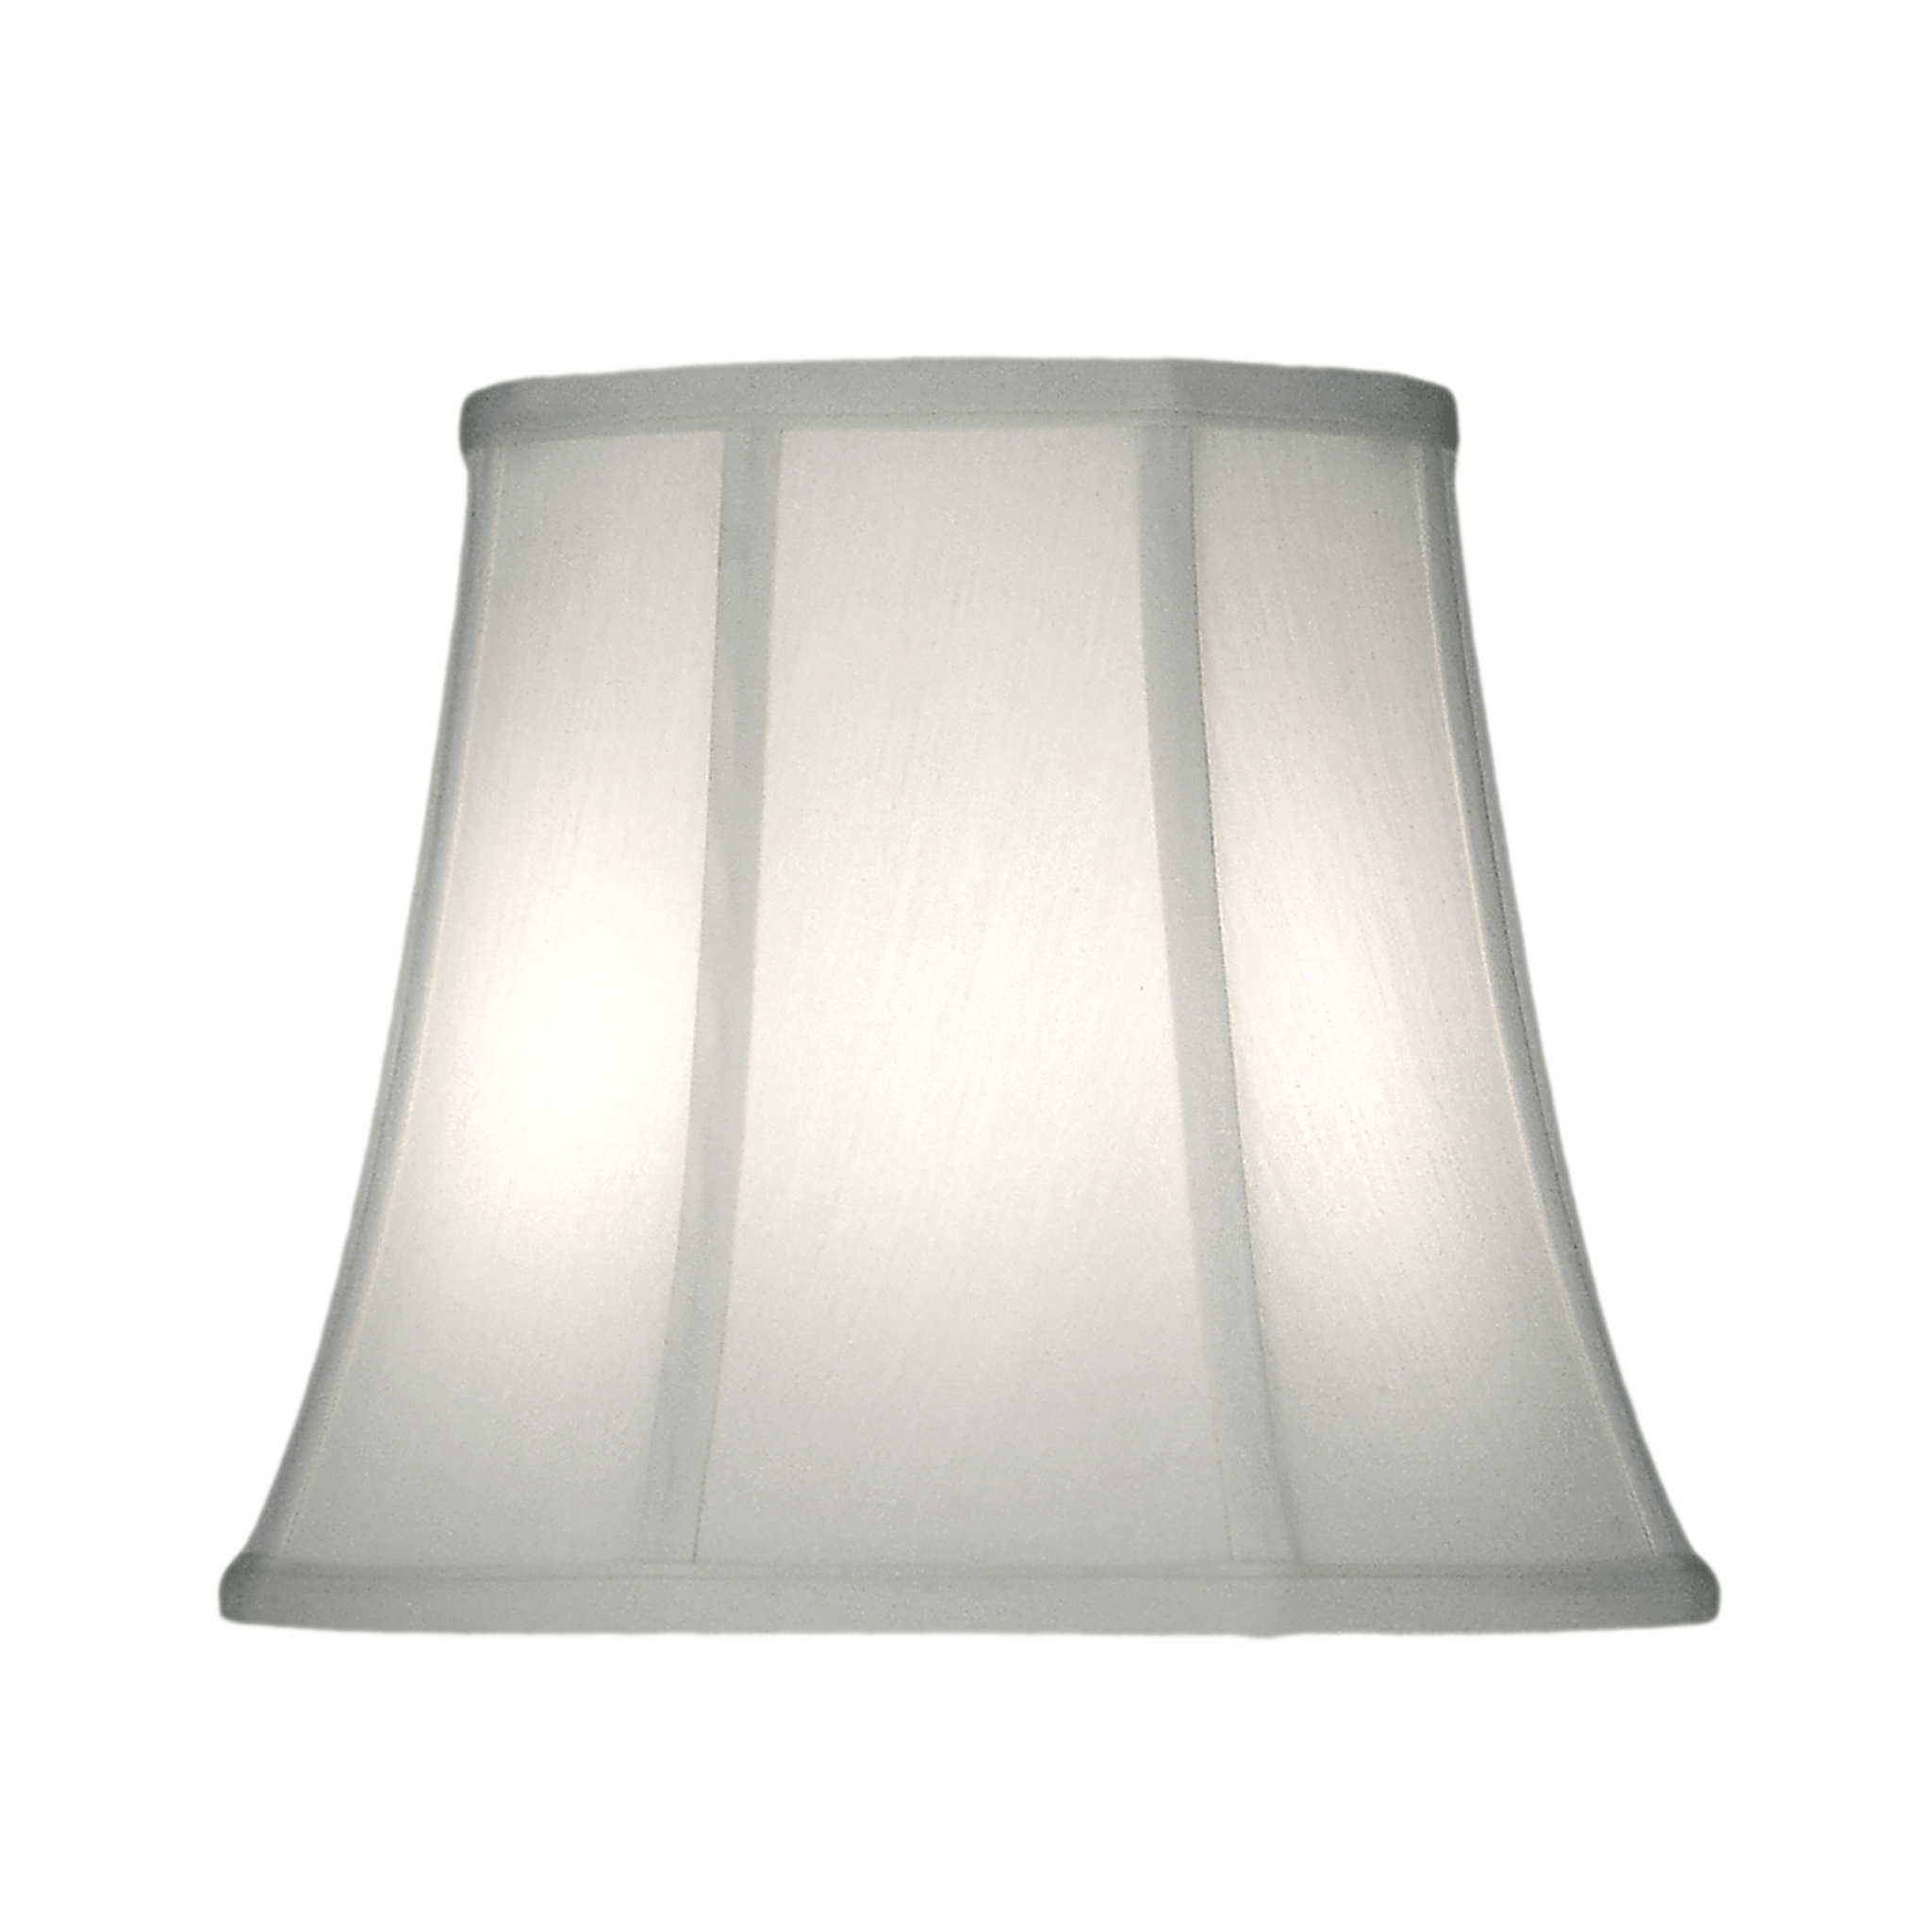 Stiffel lamp shade Ivory Stiffel Ivory Shadow Softback Bell Lamp shade - 8” x 12” x10